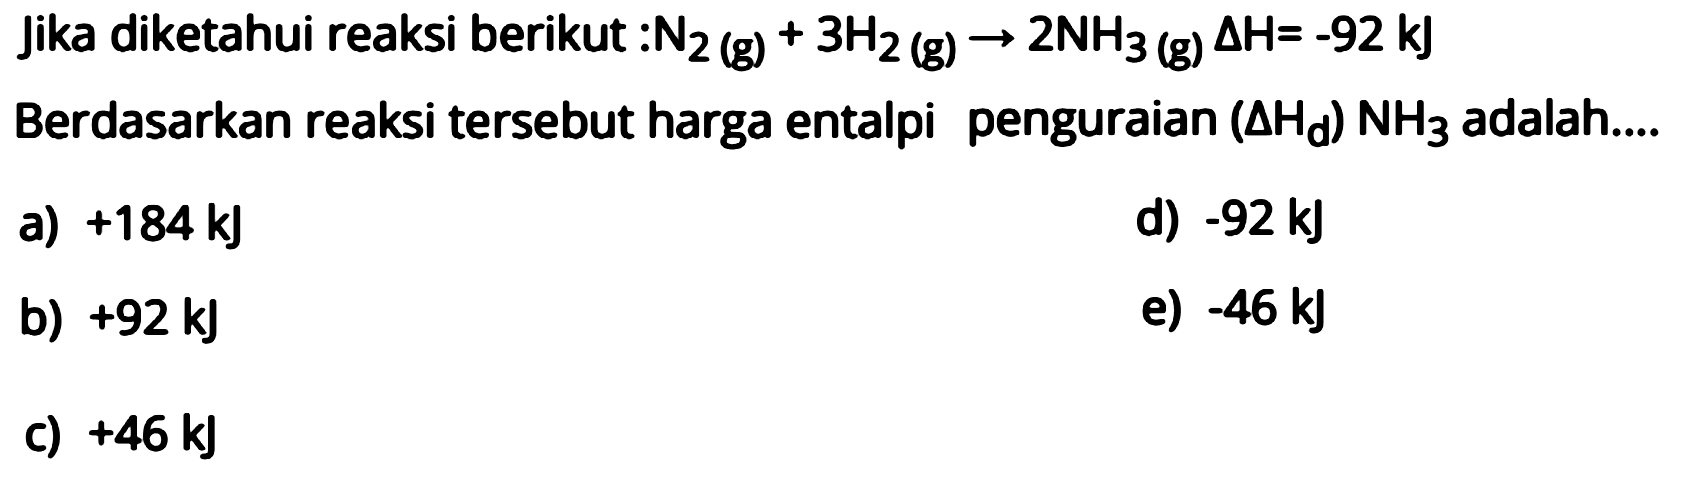 Jika diketahui reaksi berikut: N2(g)+3H2(g) -> 2NH3(g) delta H=-92 kJ  Berdasarkan reaksi tersebut harga entalpi penguraian (delta Hd) NH3 adalah ....